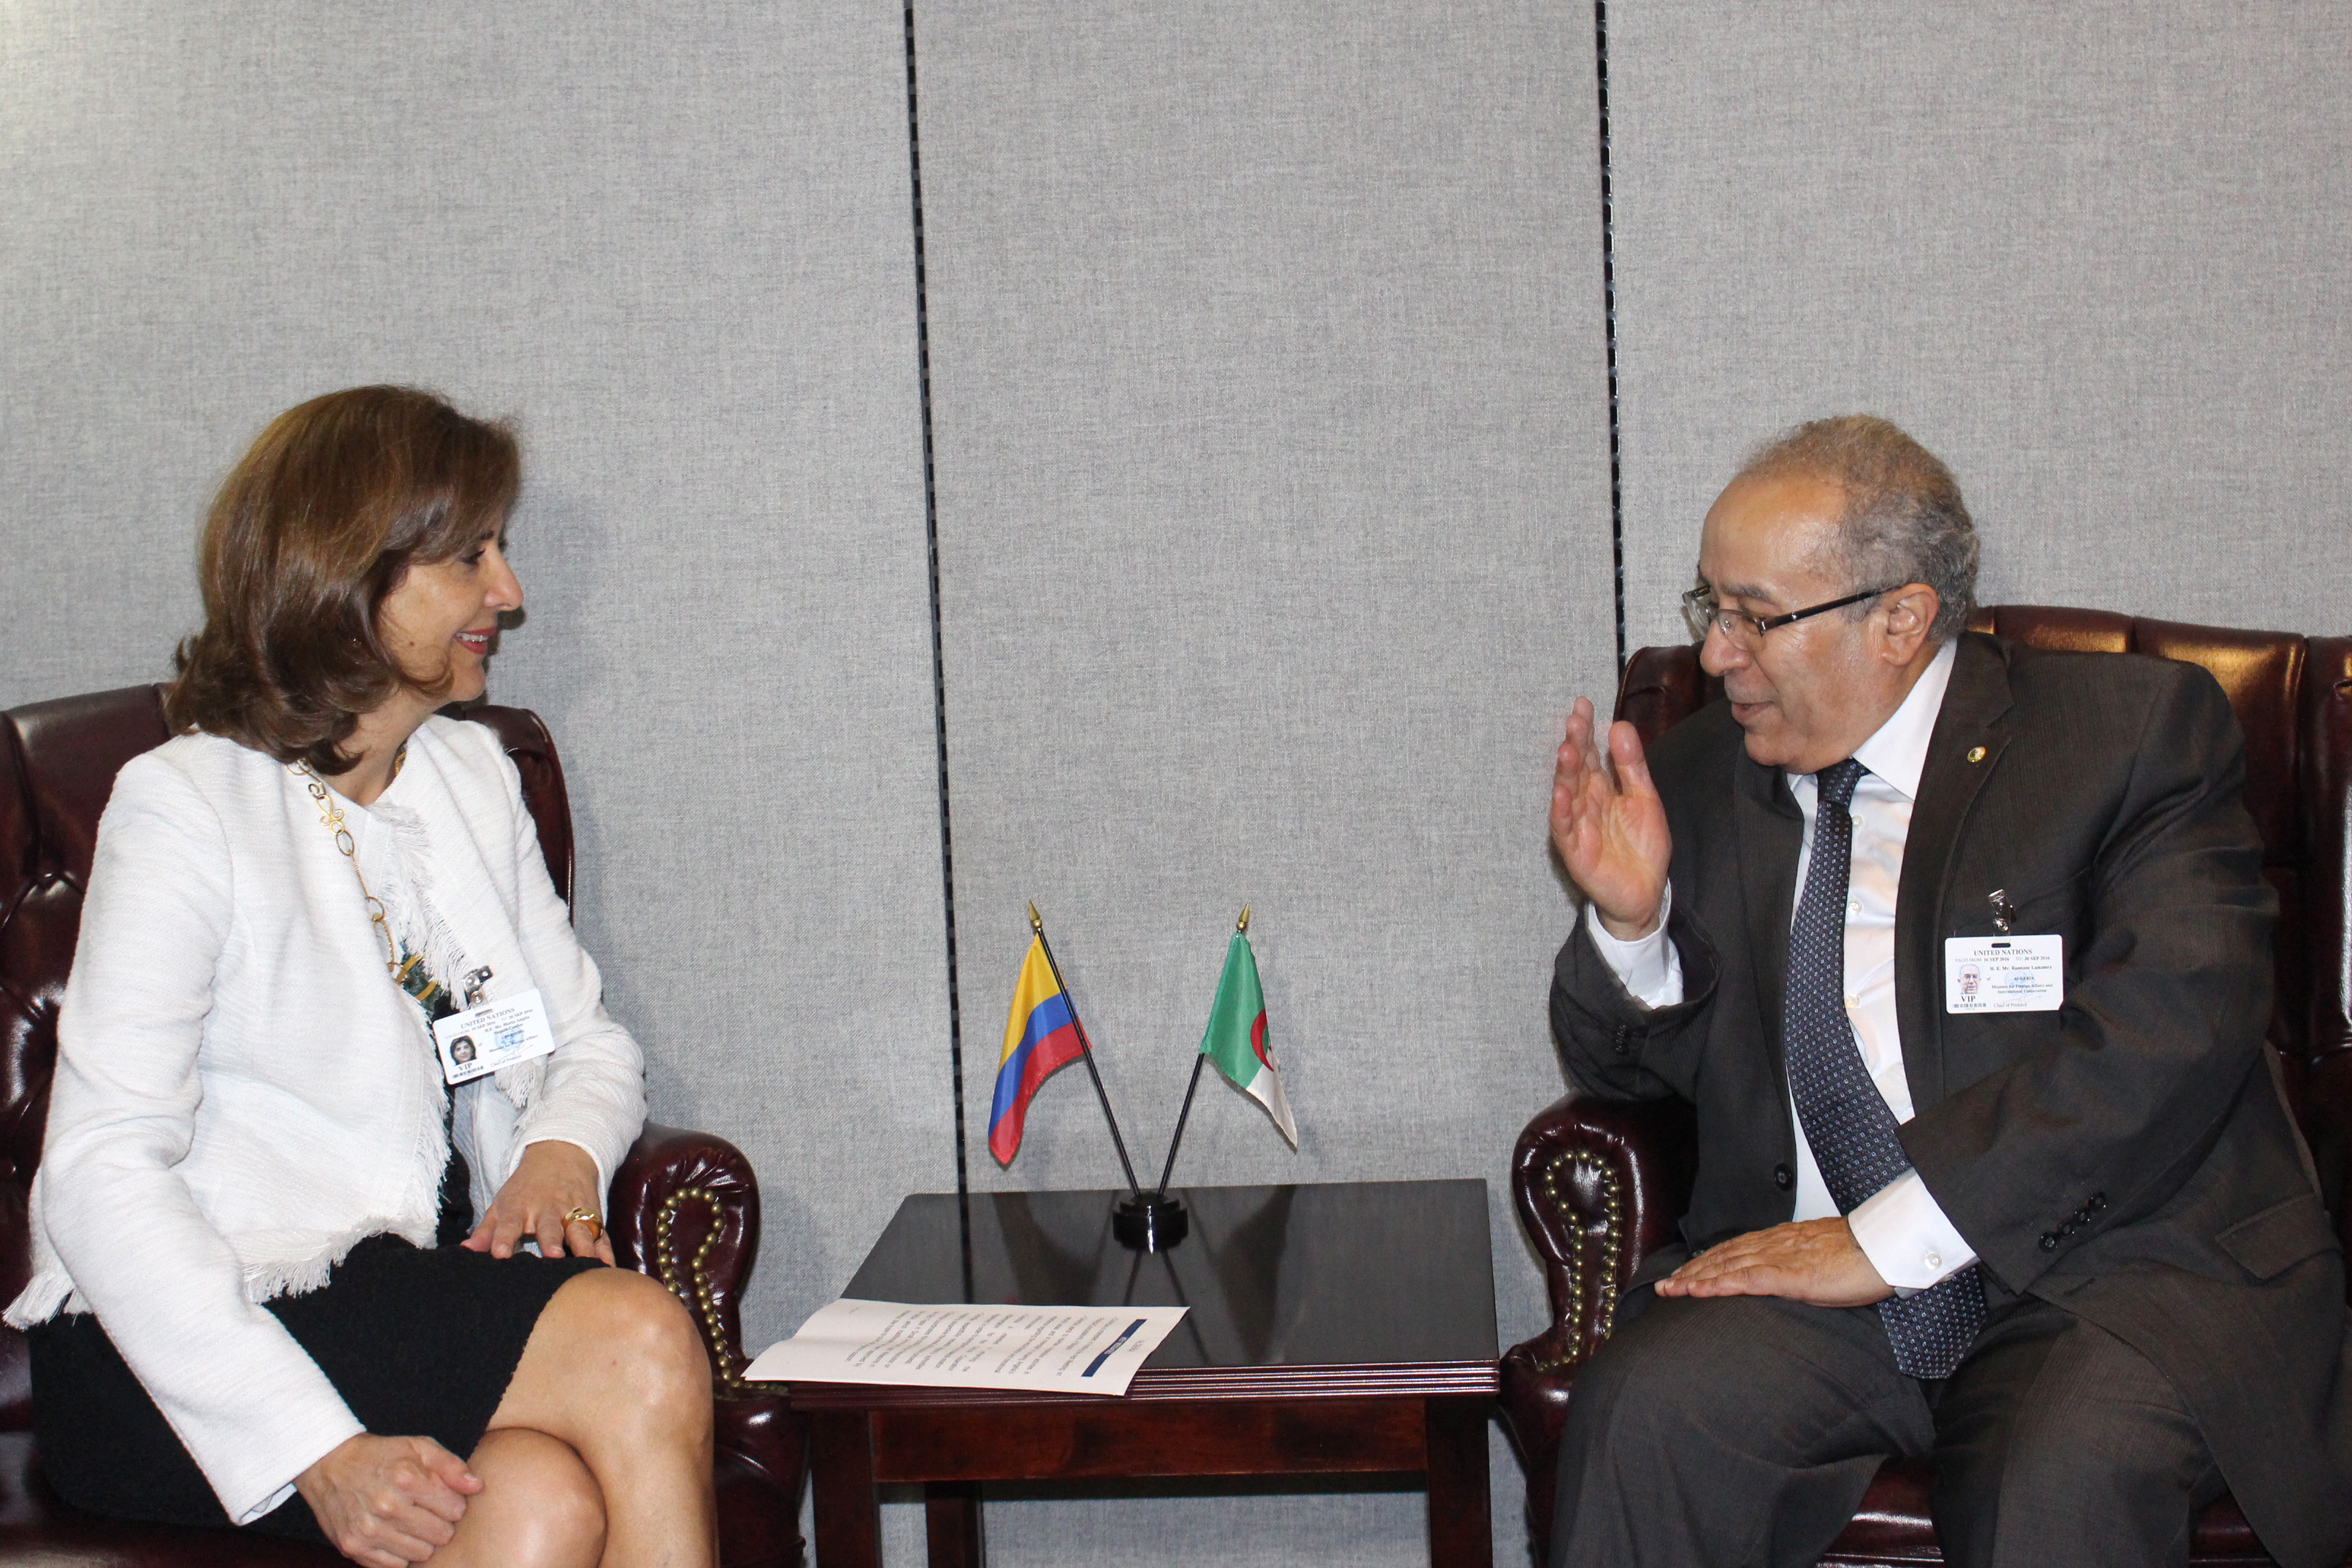 La Ministra de Relaciones Exteriores, María Ángela Holguín, sostuvo una reunión bilateral con el Ministro de Estado de Asuntos Exteriores y de la Cooperación Internacional de Argelia, Ramtane Lamamra, en la cual se destacó la importancia del Acuerdo de Paz en Colombia, y se manifestó el interés en cooperar en materia de reconciliación y justicia transicional.